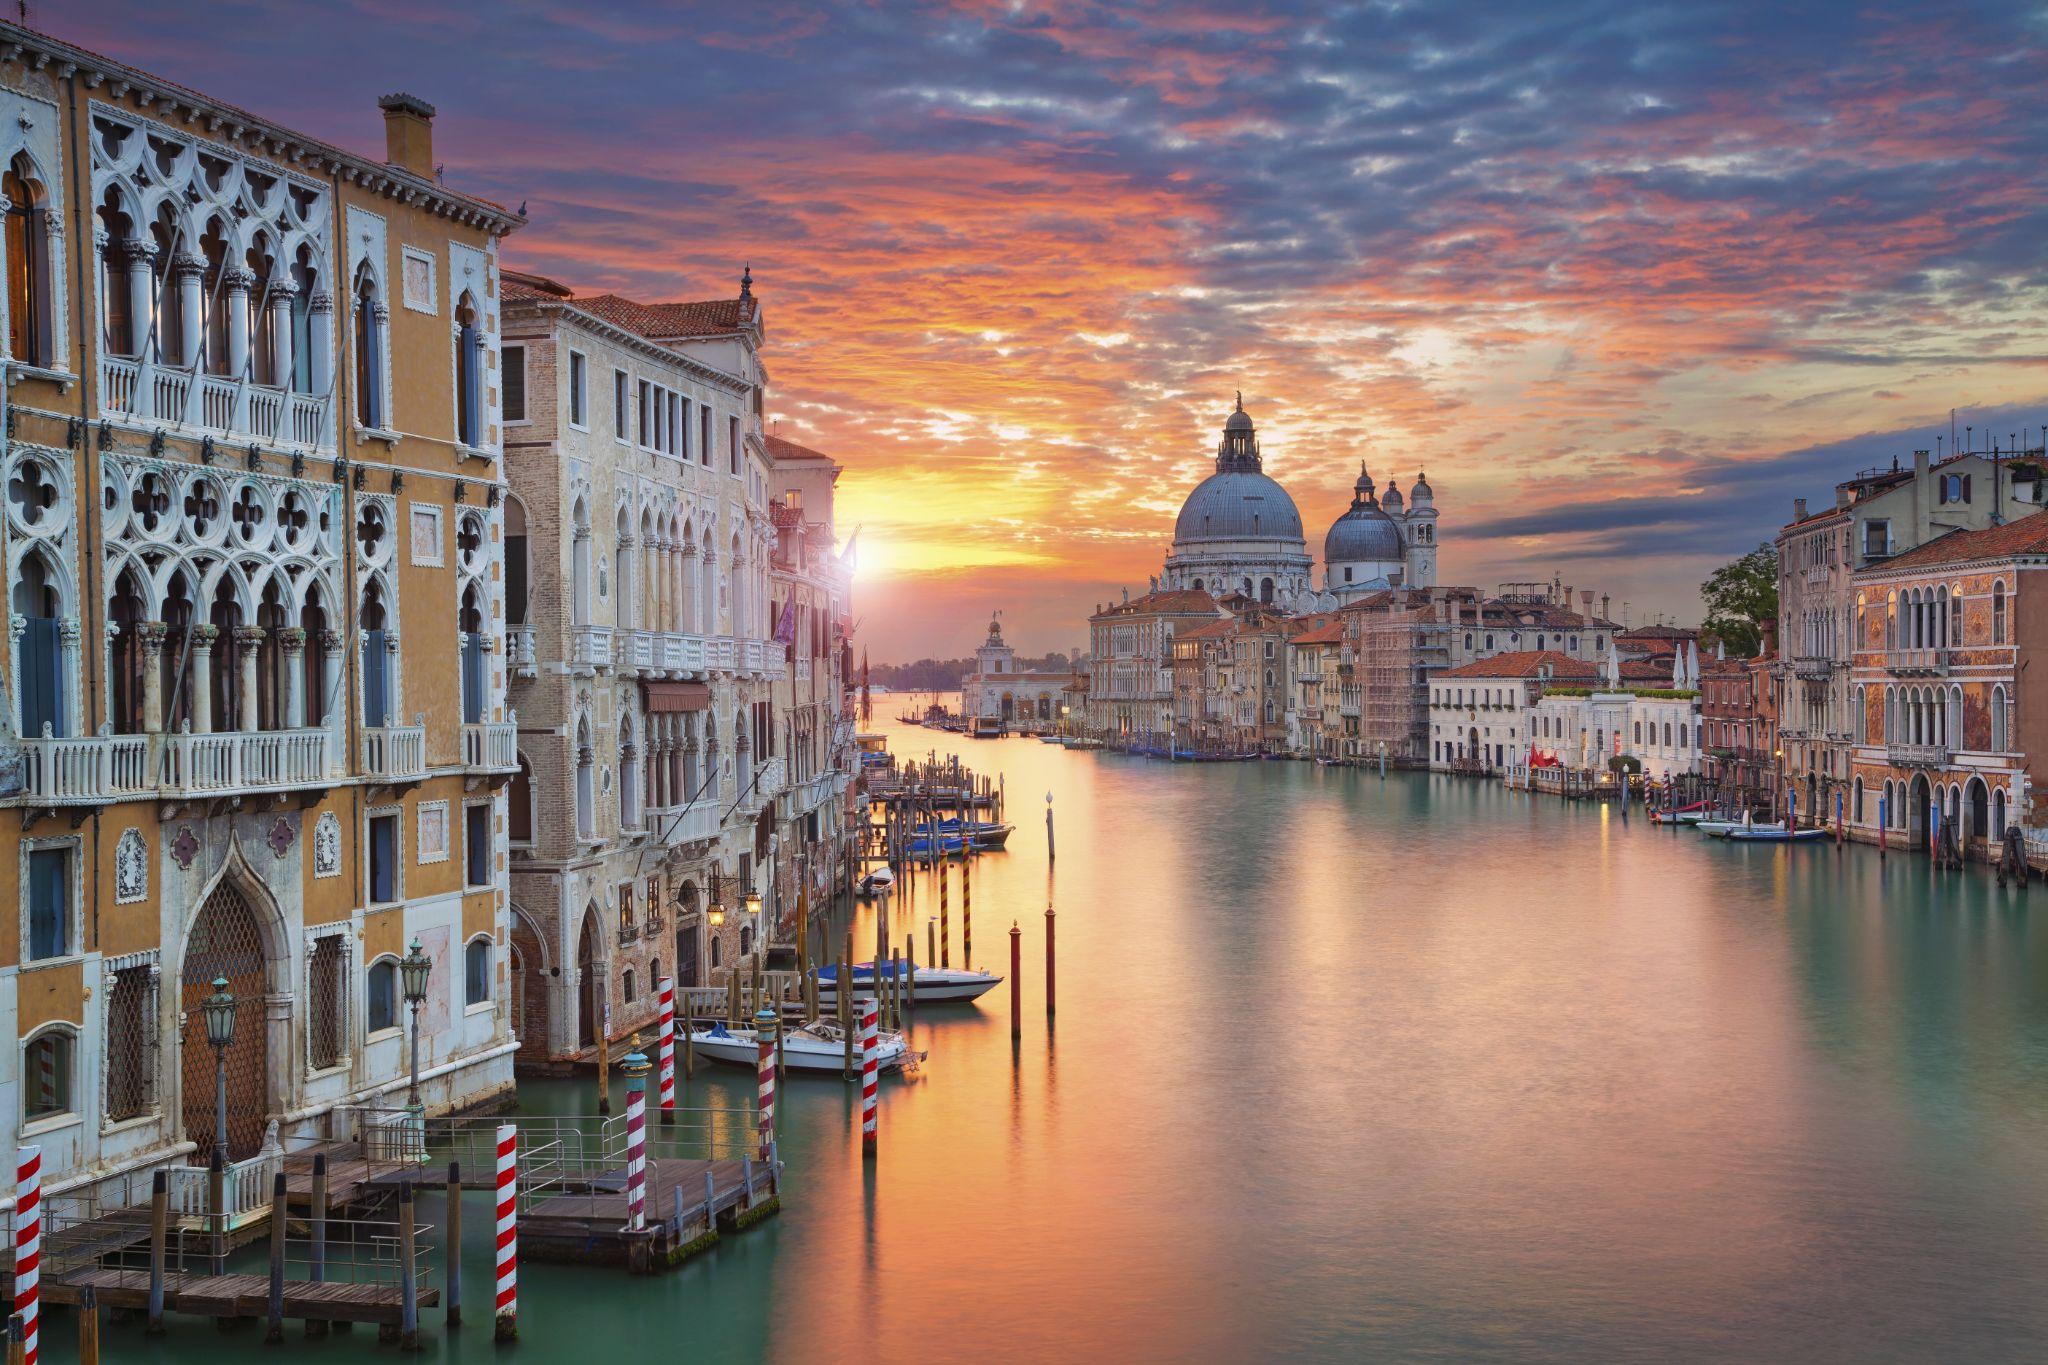 Imagen del Gran Canal de Venecia, con la basílica de Santa Maria della Salute al fondo.